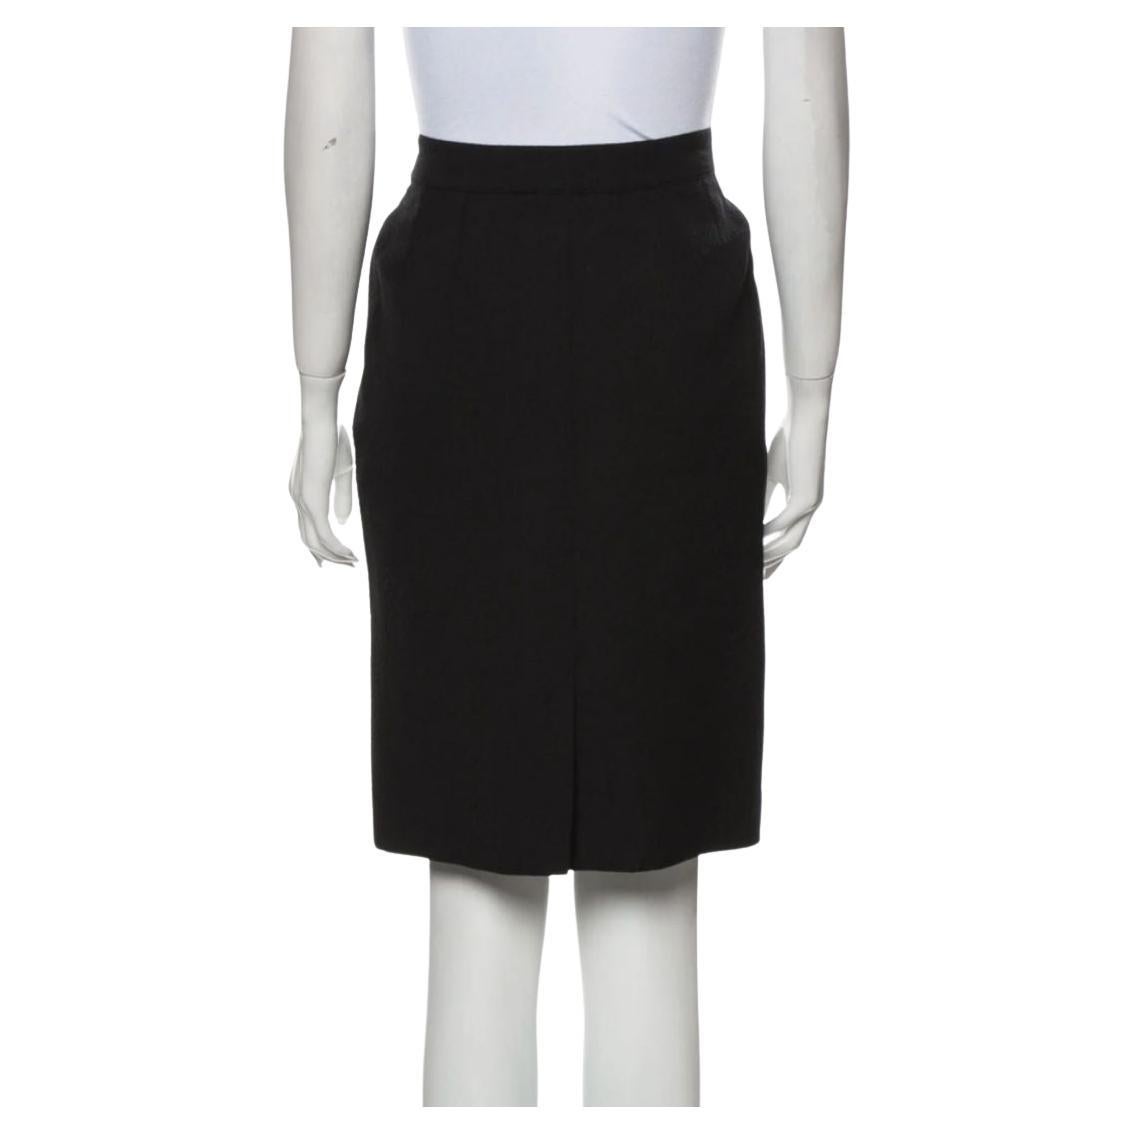 Saint Laurent Rive Gauche Black Vintage Pencil Skirt Sz 40 (US6)
Pristine Condition
